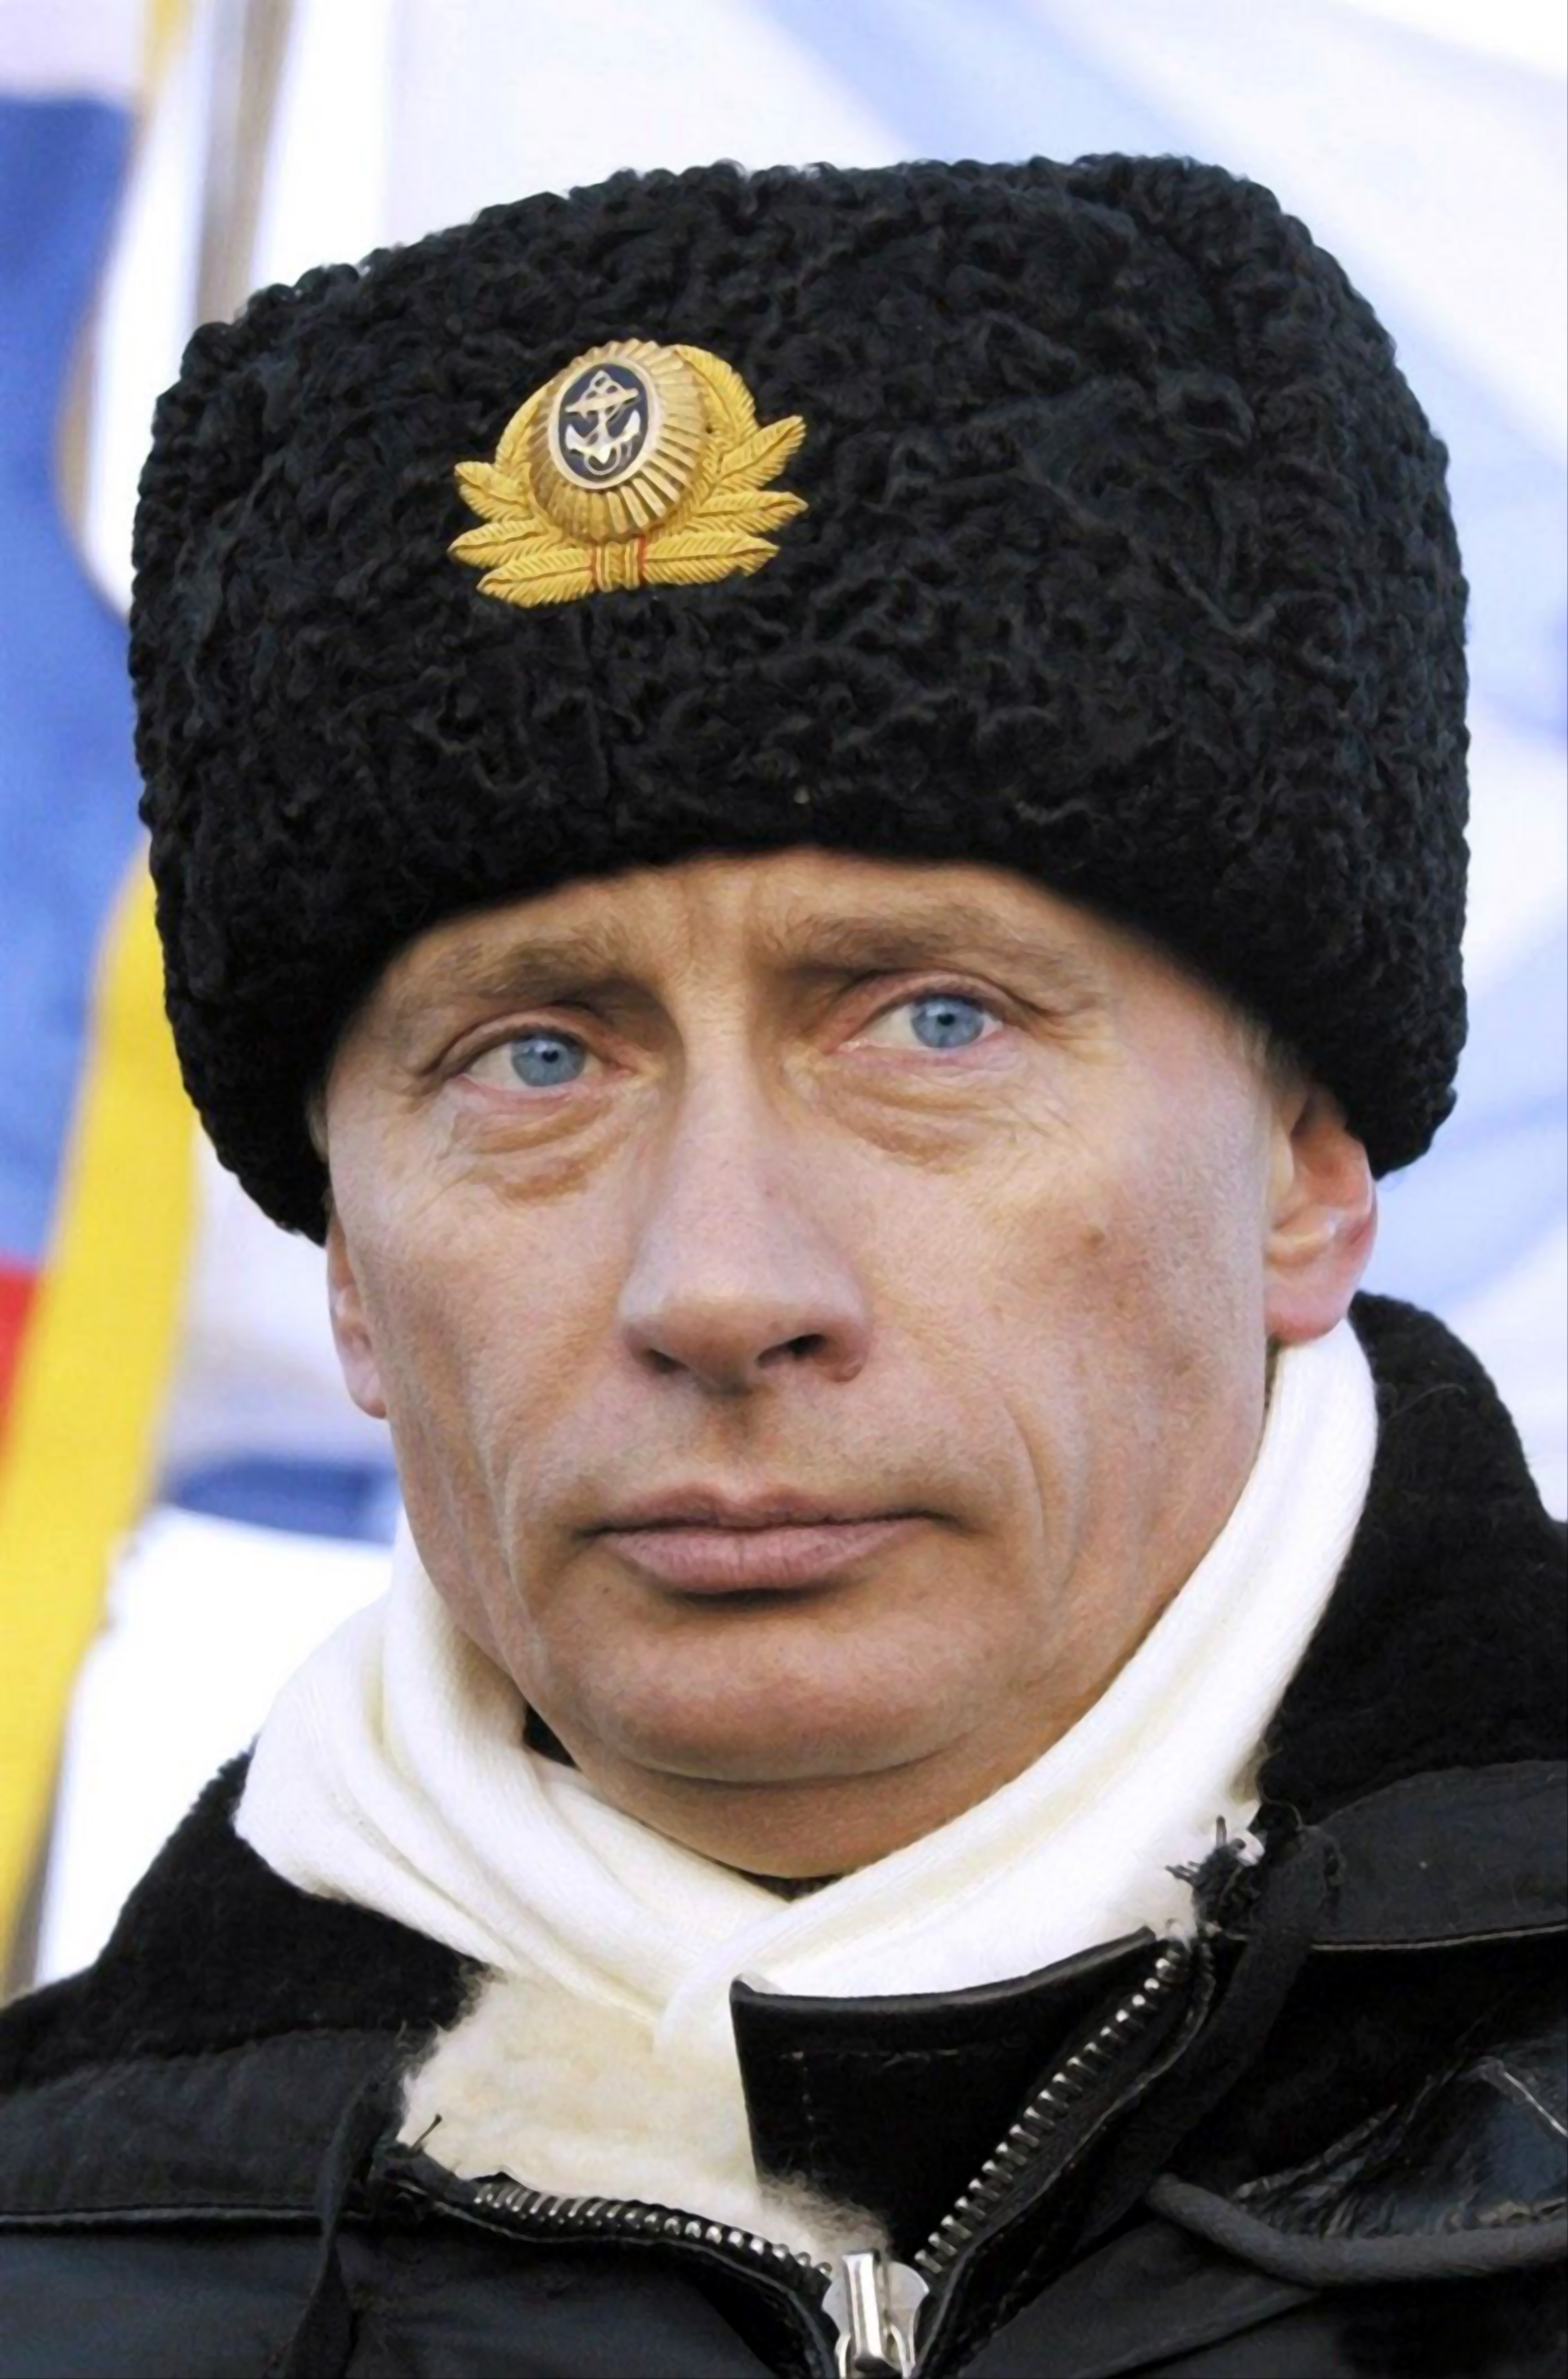 Пятнадцатилетний путь Президента Путина